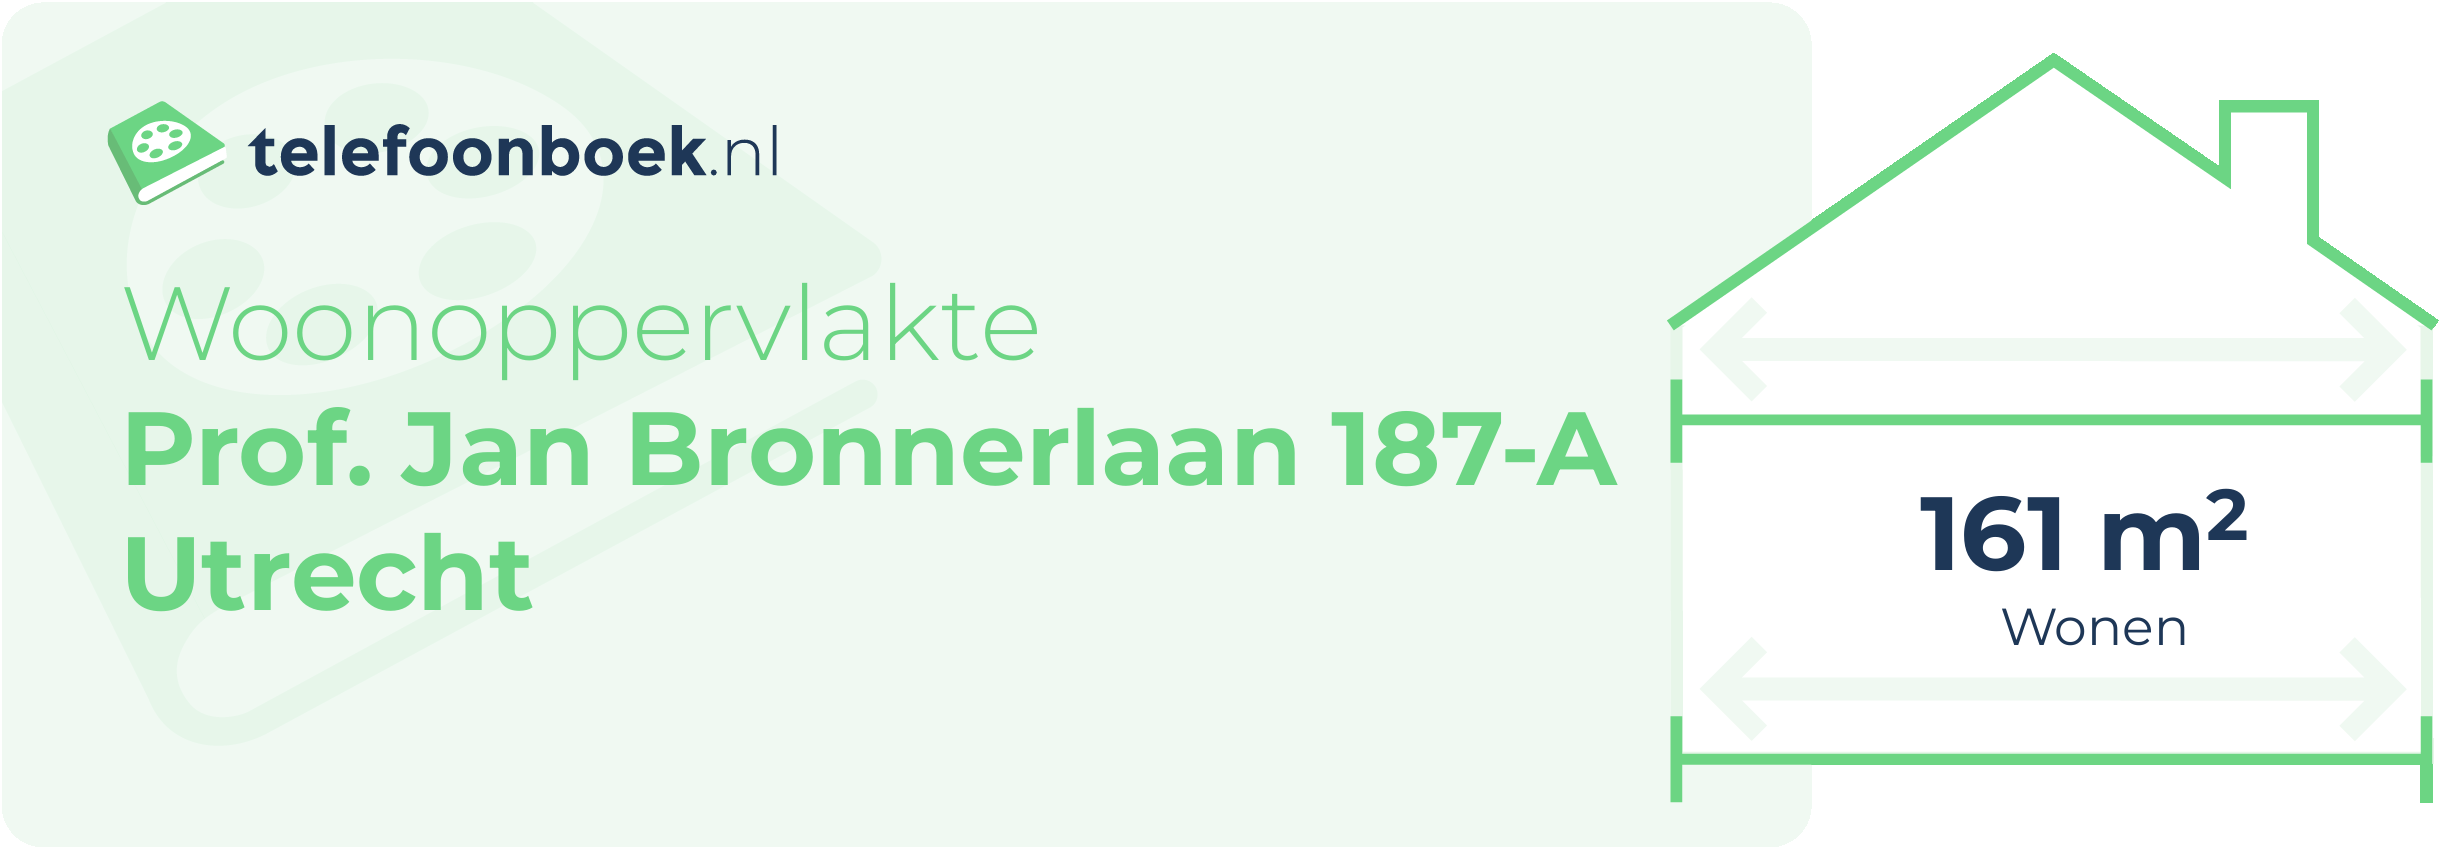 Woonoppervlakte Prof. Jan Bronnerlaan 187-A Utrecht